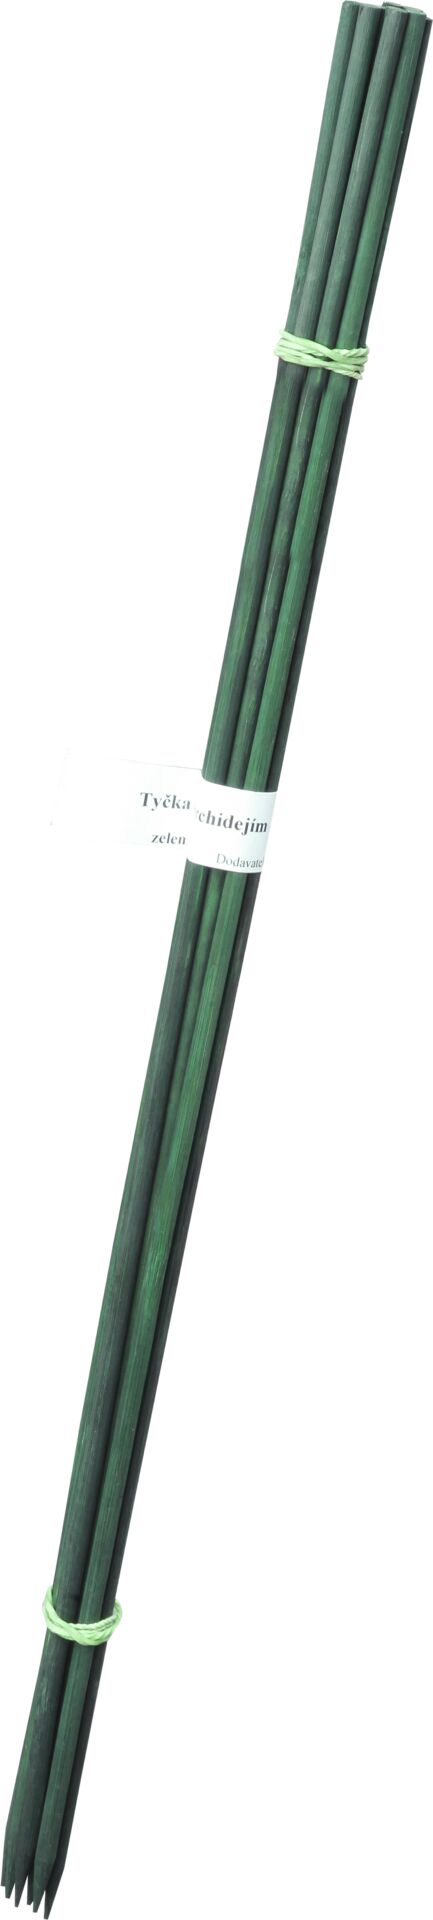 Tyčka k orchideji 7mm, 90 cm - 10 ks bambus zelená